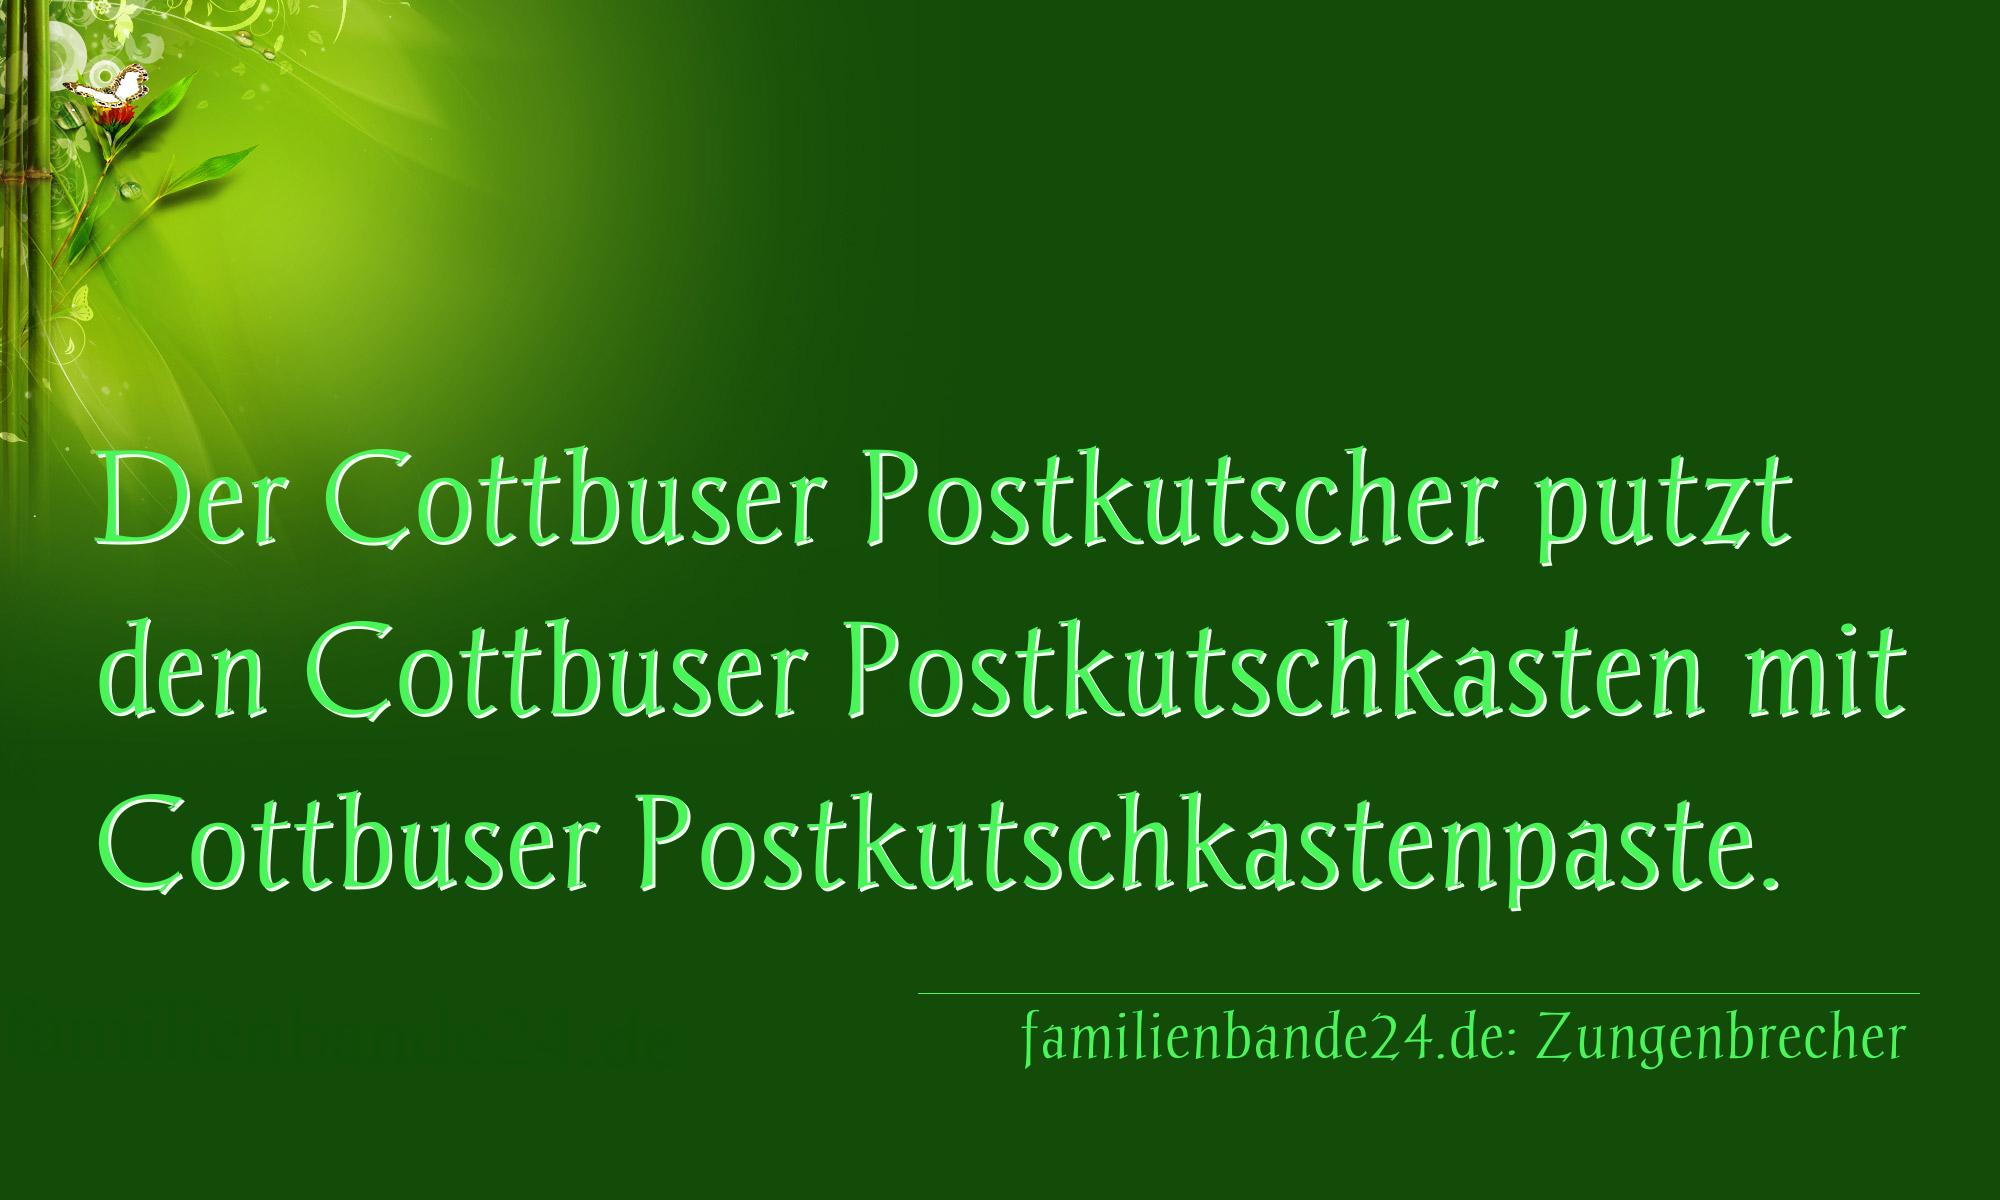 Zungenbrecher Nr. 726: Der Cottbuser Postkutscher putzt den Cottbuser Postkutschk [...]